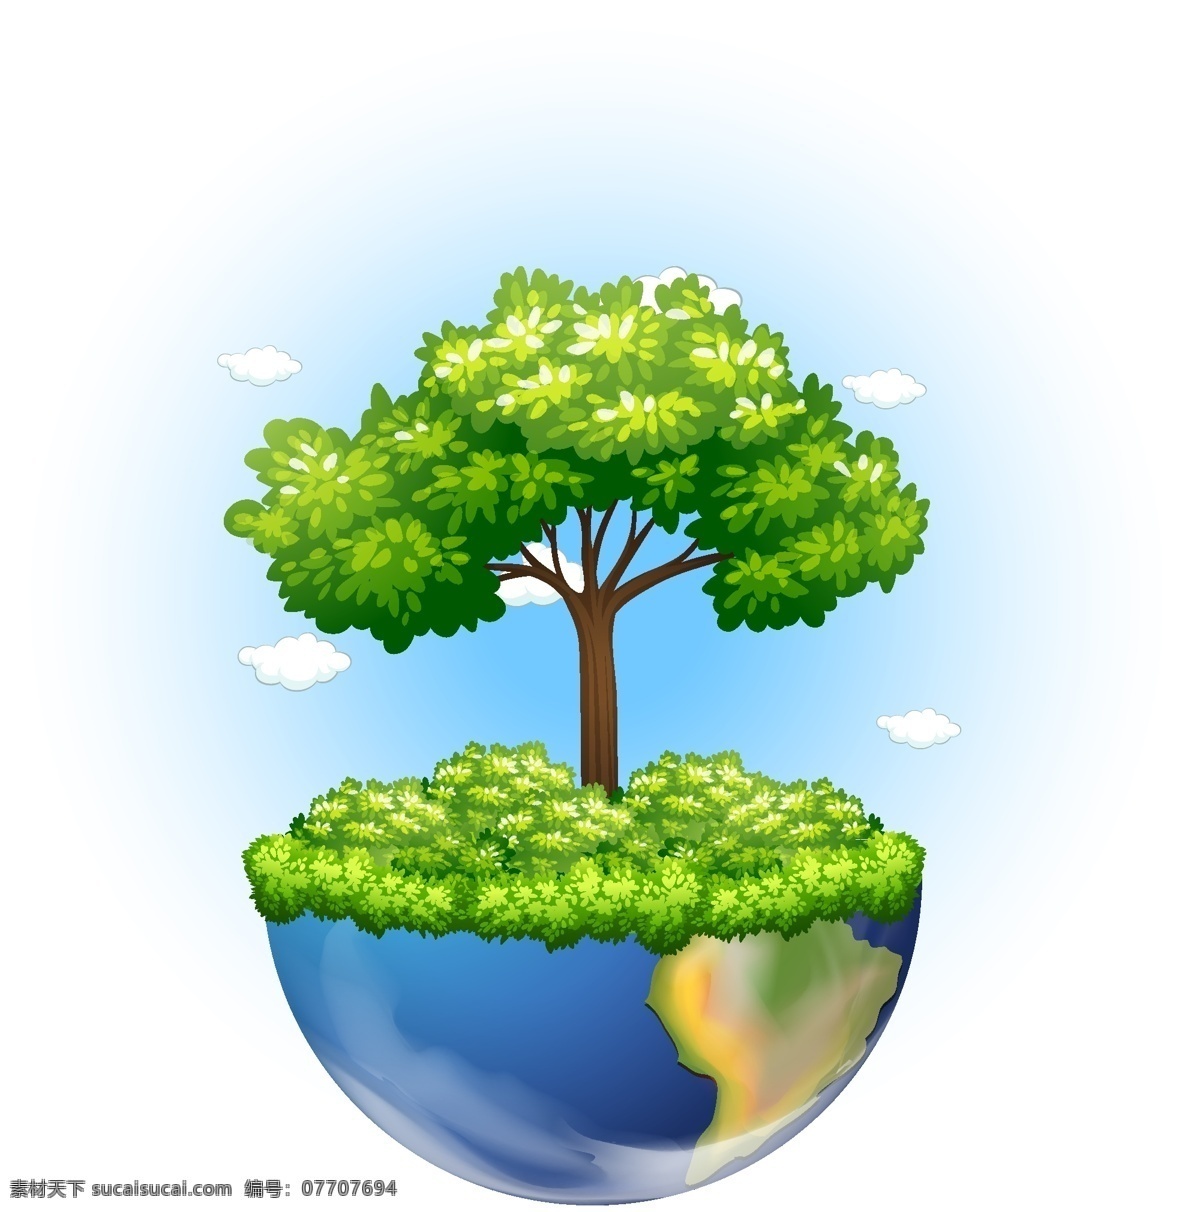 自然背景设计 背景 树木 自然 地球 壁纸 颜色 多彩的背景 自然背景